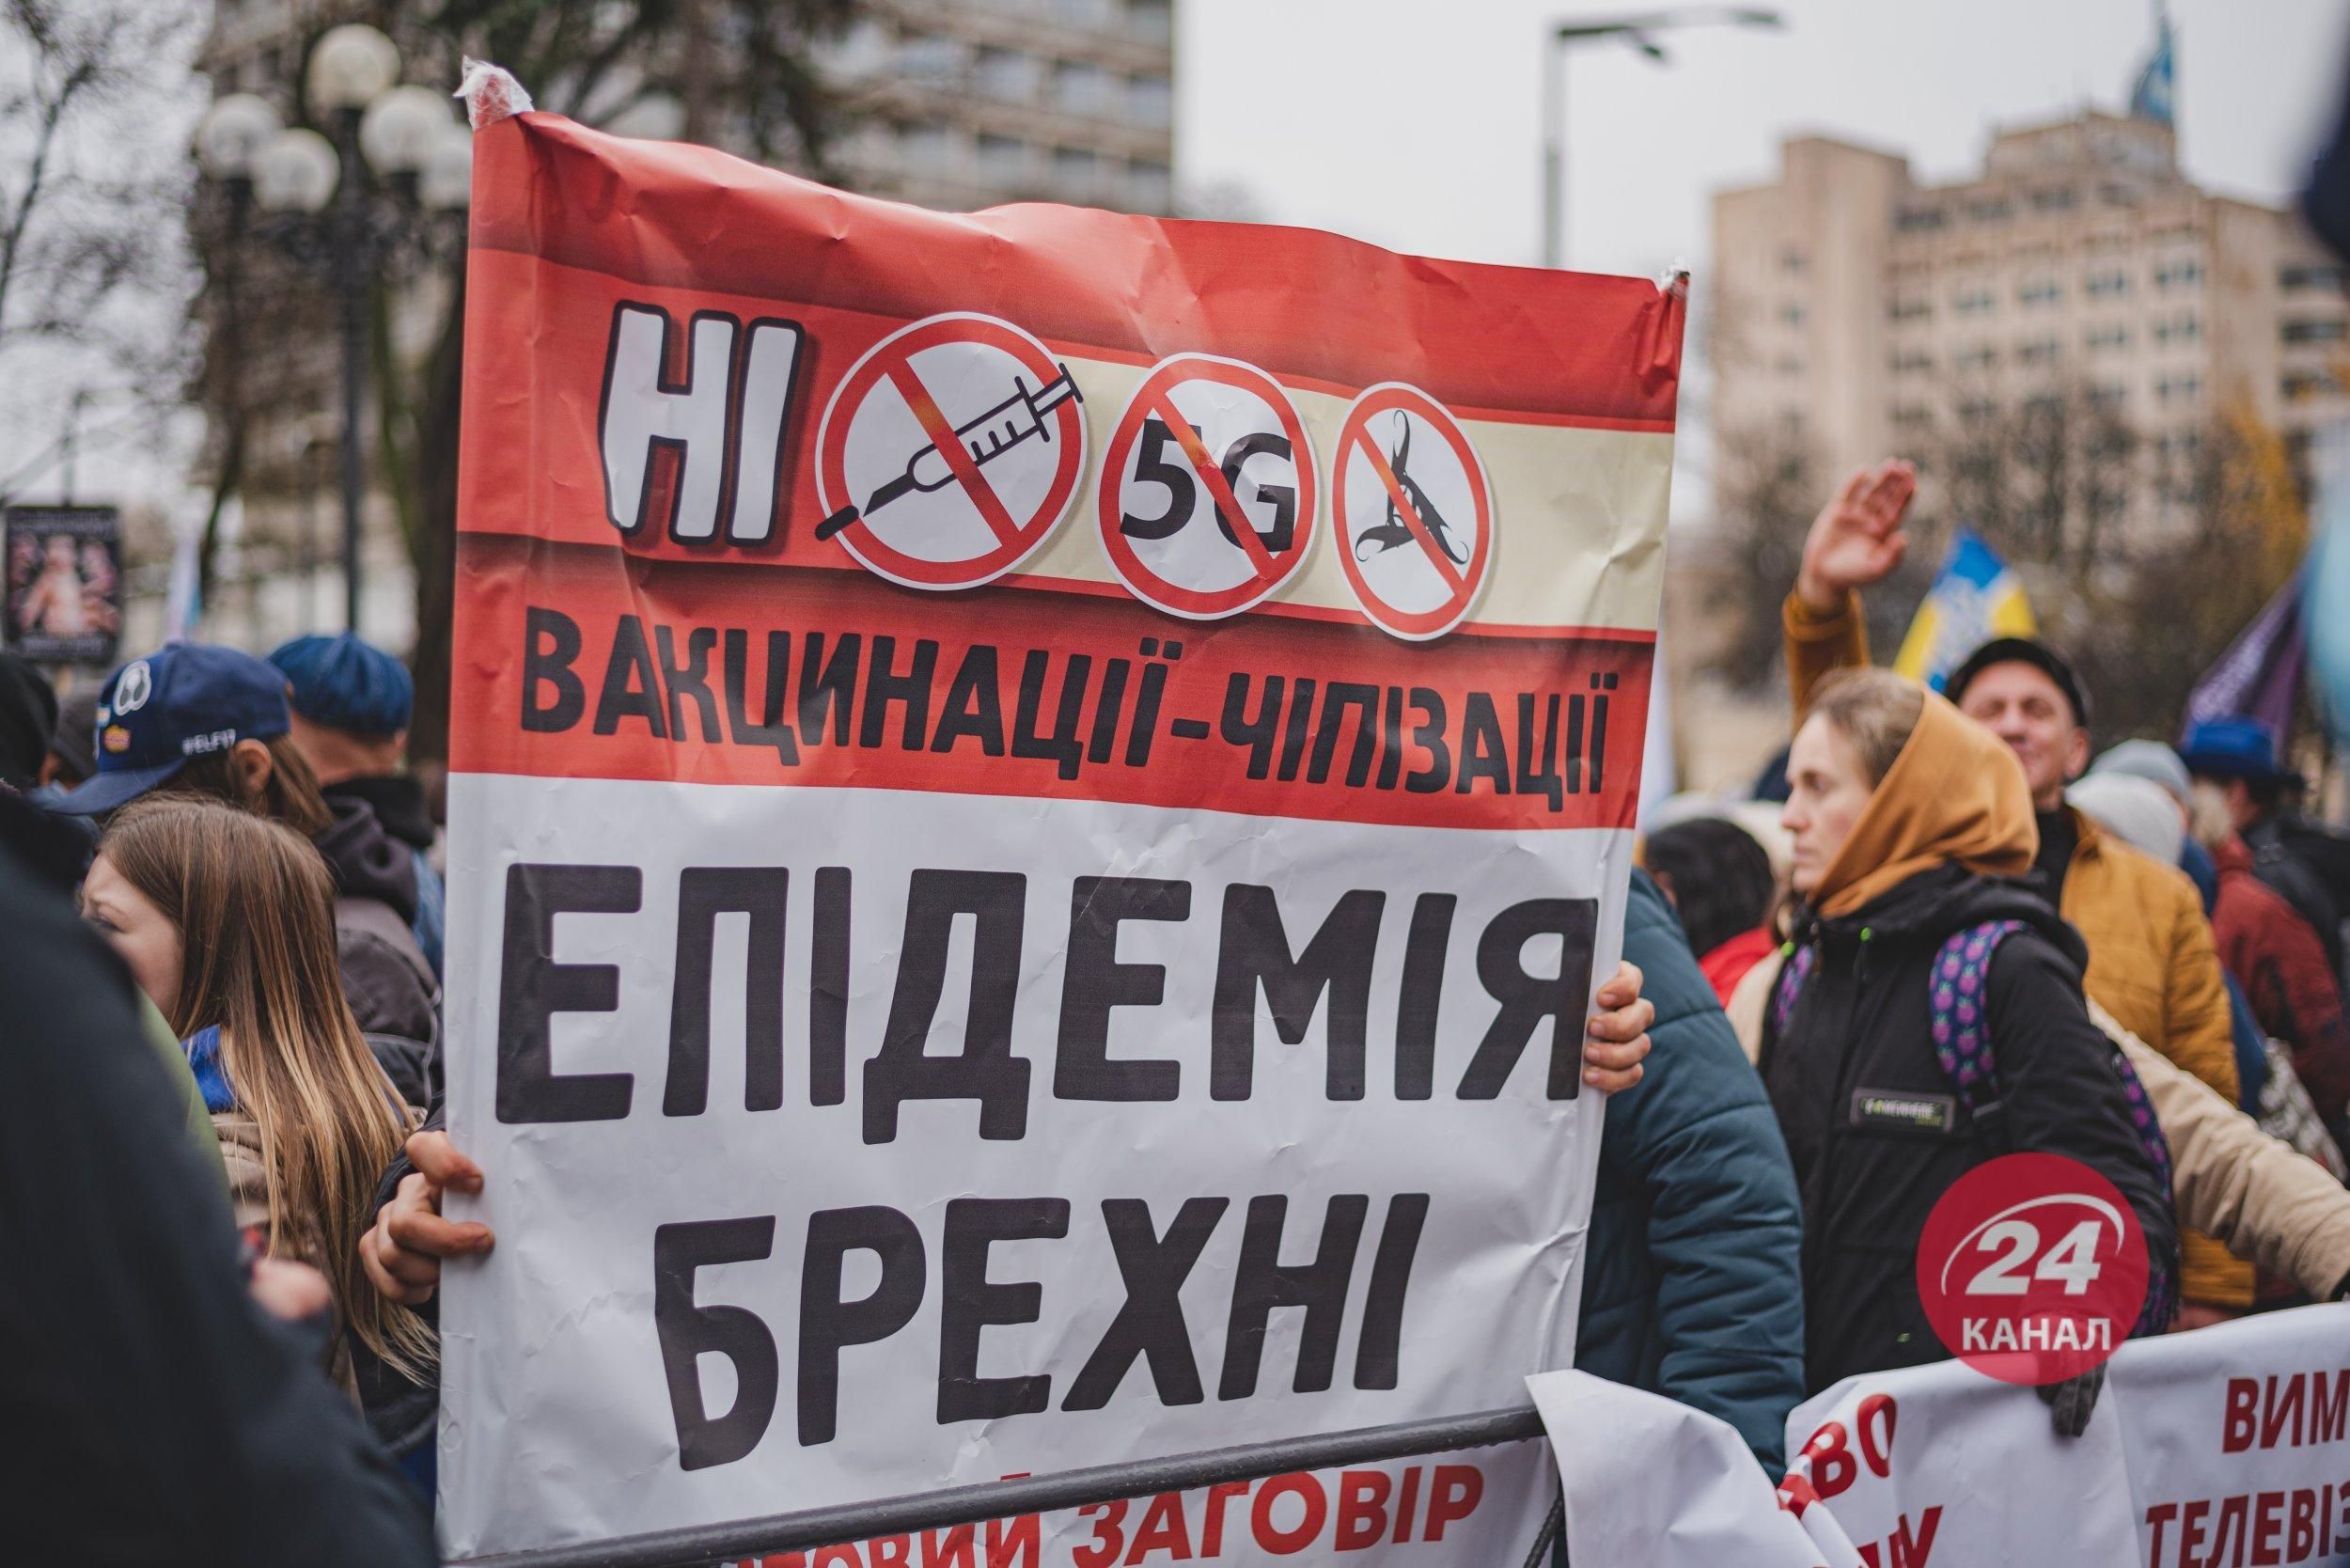 Зло, яке вбиває, – активіст закликав заборонити "антиваксів" на законодавчому рівні - Україна новини - 24 Канал